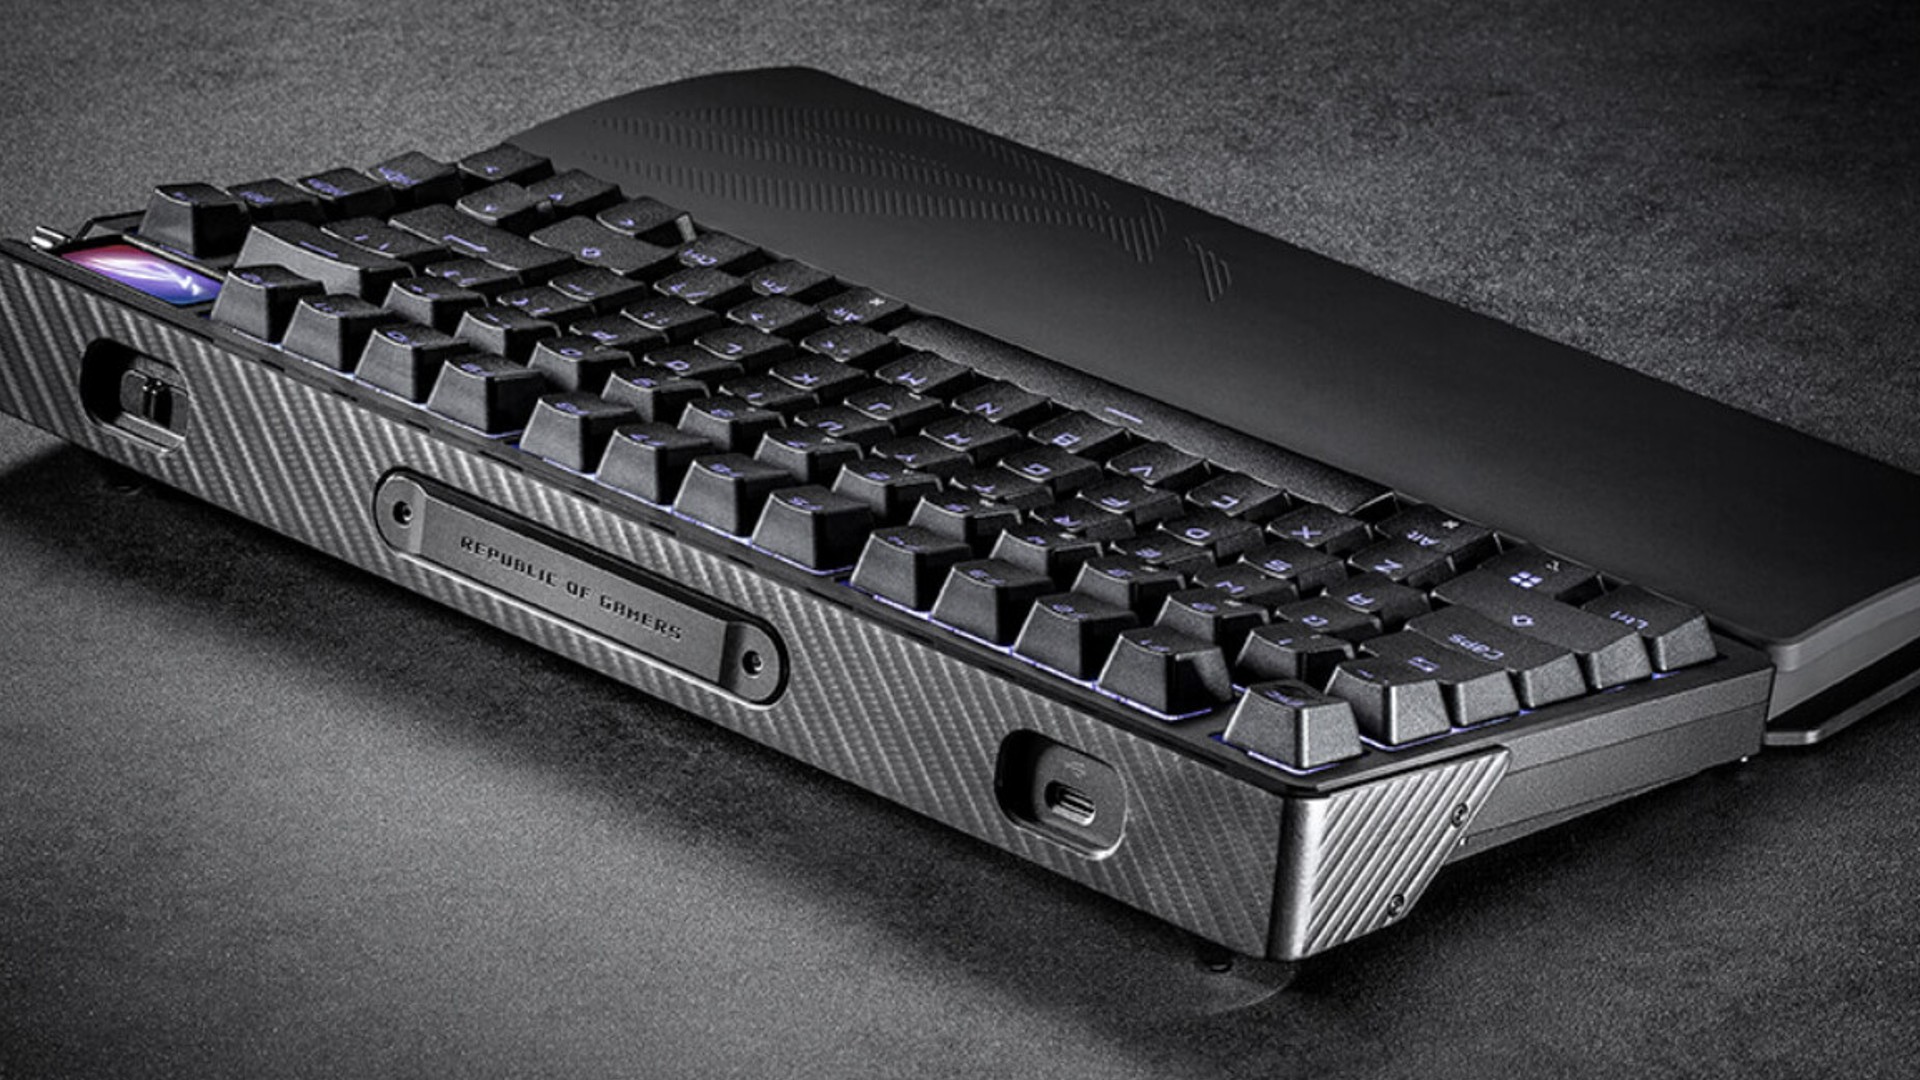 Bu yeni Asus ROG oyun klavyesinin ne kadara mal olduğuna inanamayacaksınız